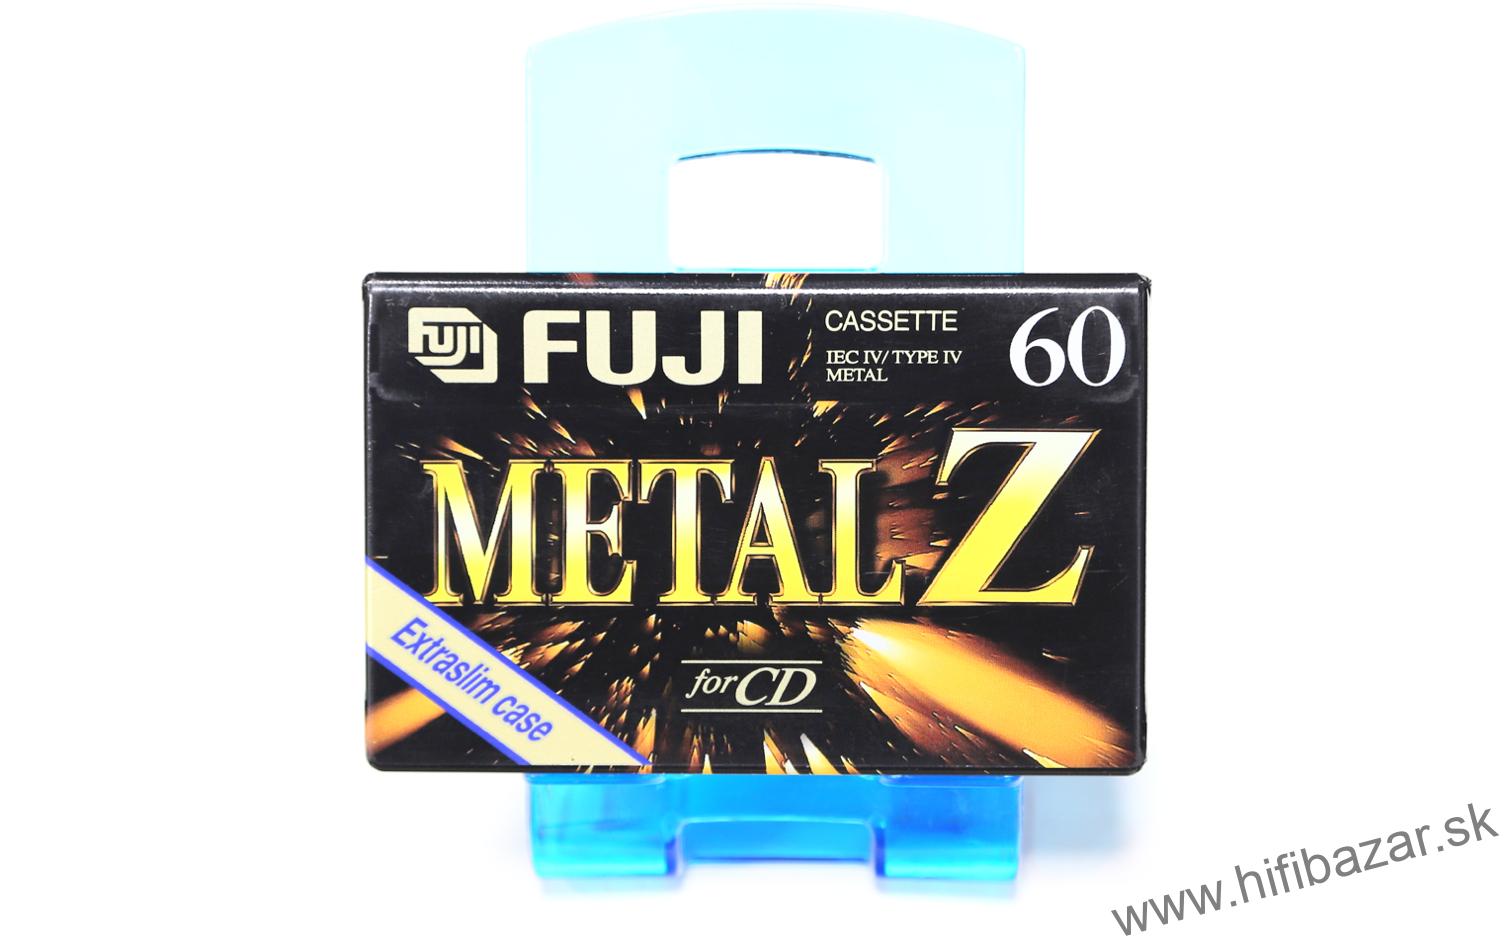 FUJI Metal Z-60 